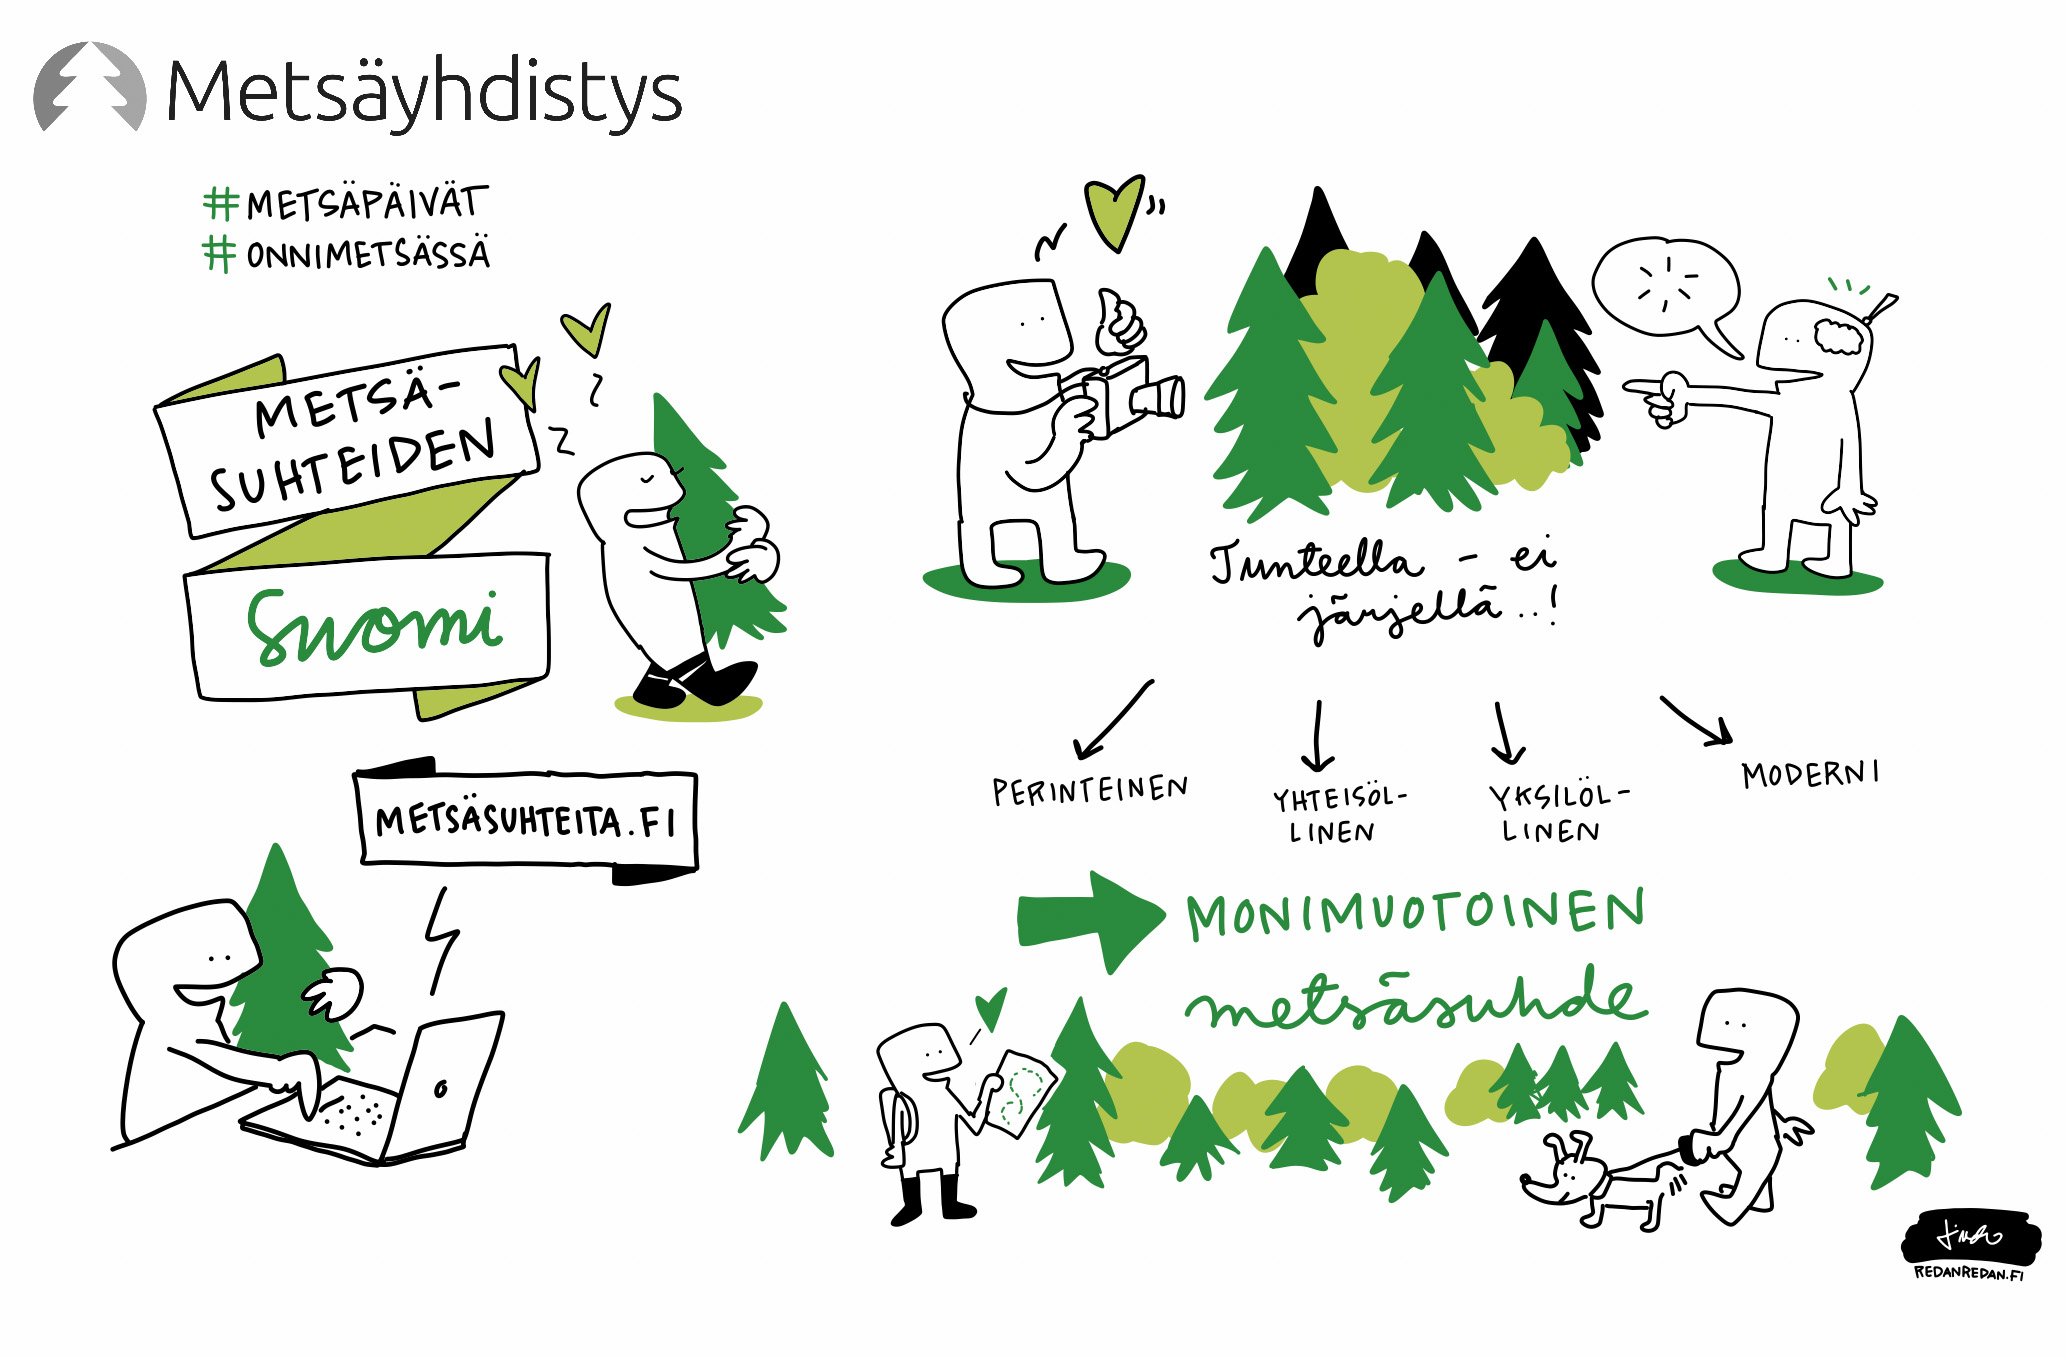 Sukelsimme metsäsuhteiden maailmaan. Tässä Linda Saukko-Raudan näkemys siitä, millainen on on suomalaisten metsäsuhteiden kirjo? Miten työssä, asiakaskohtaamisissa ja viestinnässä voi hyödyntää taitoa tunnistaa erilaisia metsäsuhteita. Voisiko se olla jopa osa brändiä?